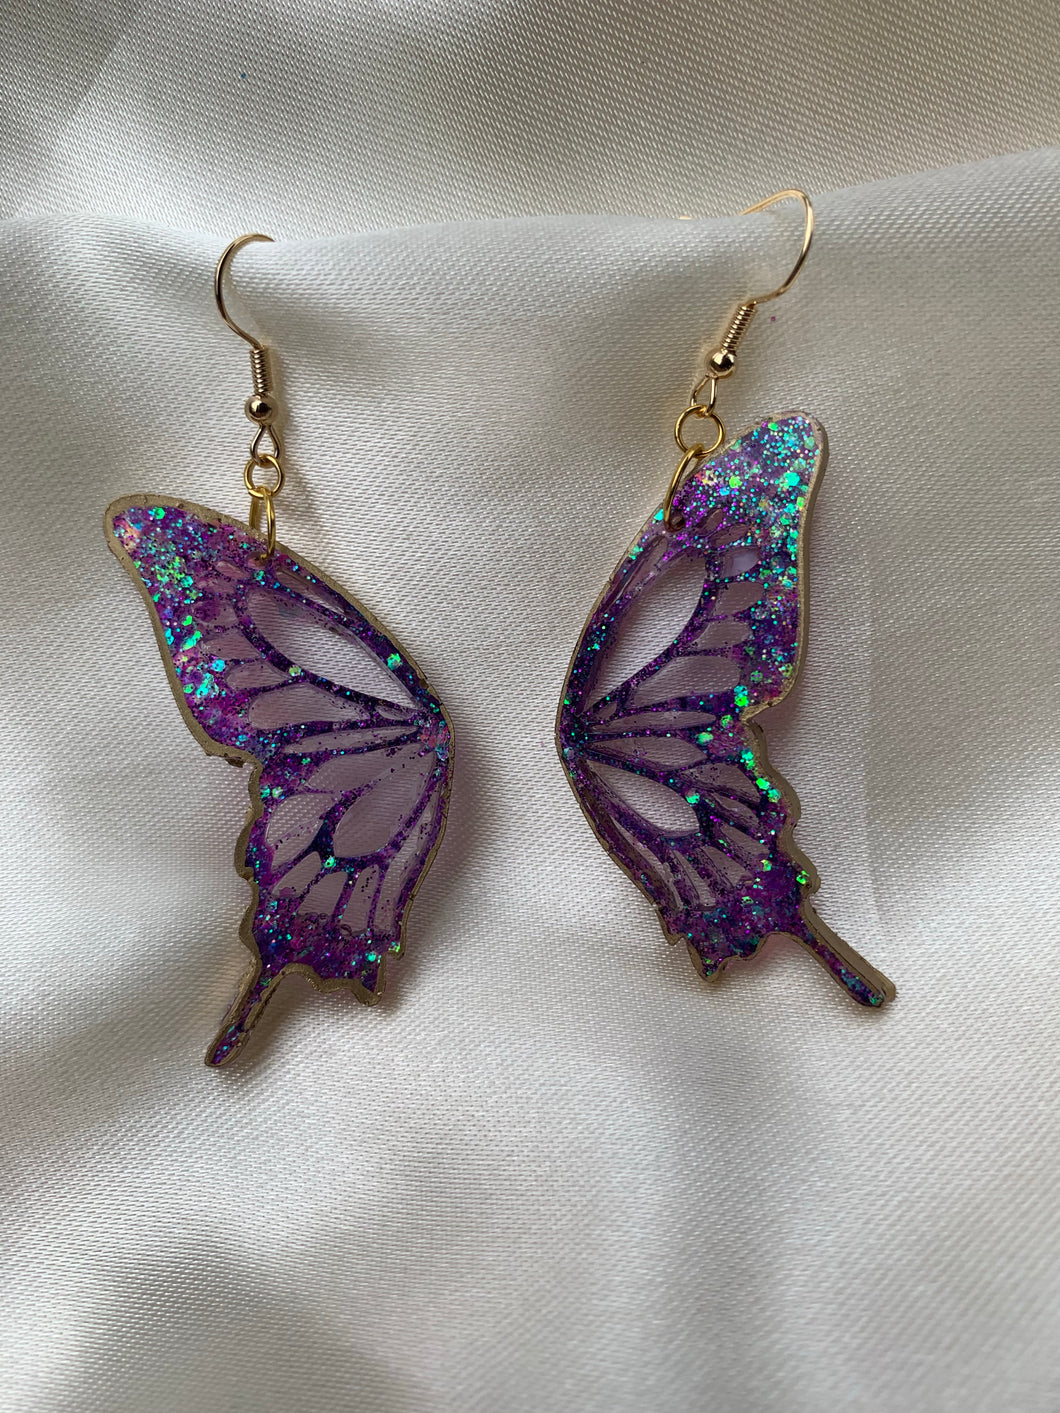 Purple lined in gold butterfly earrings